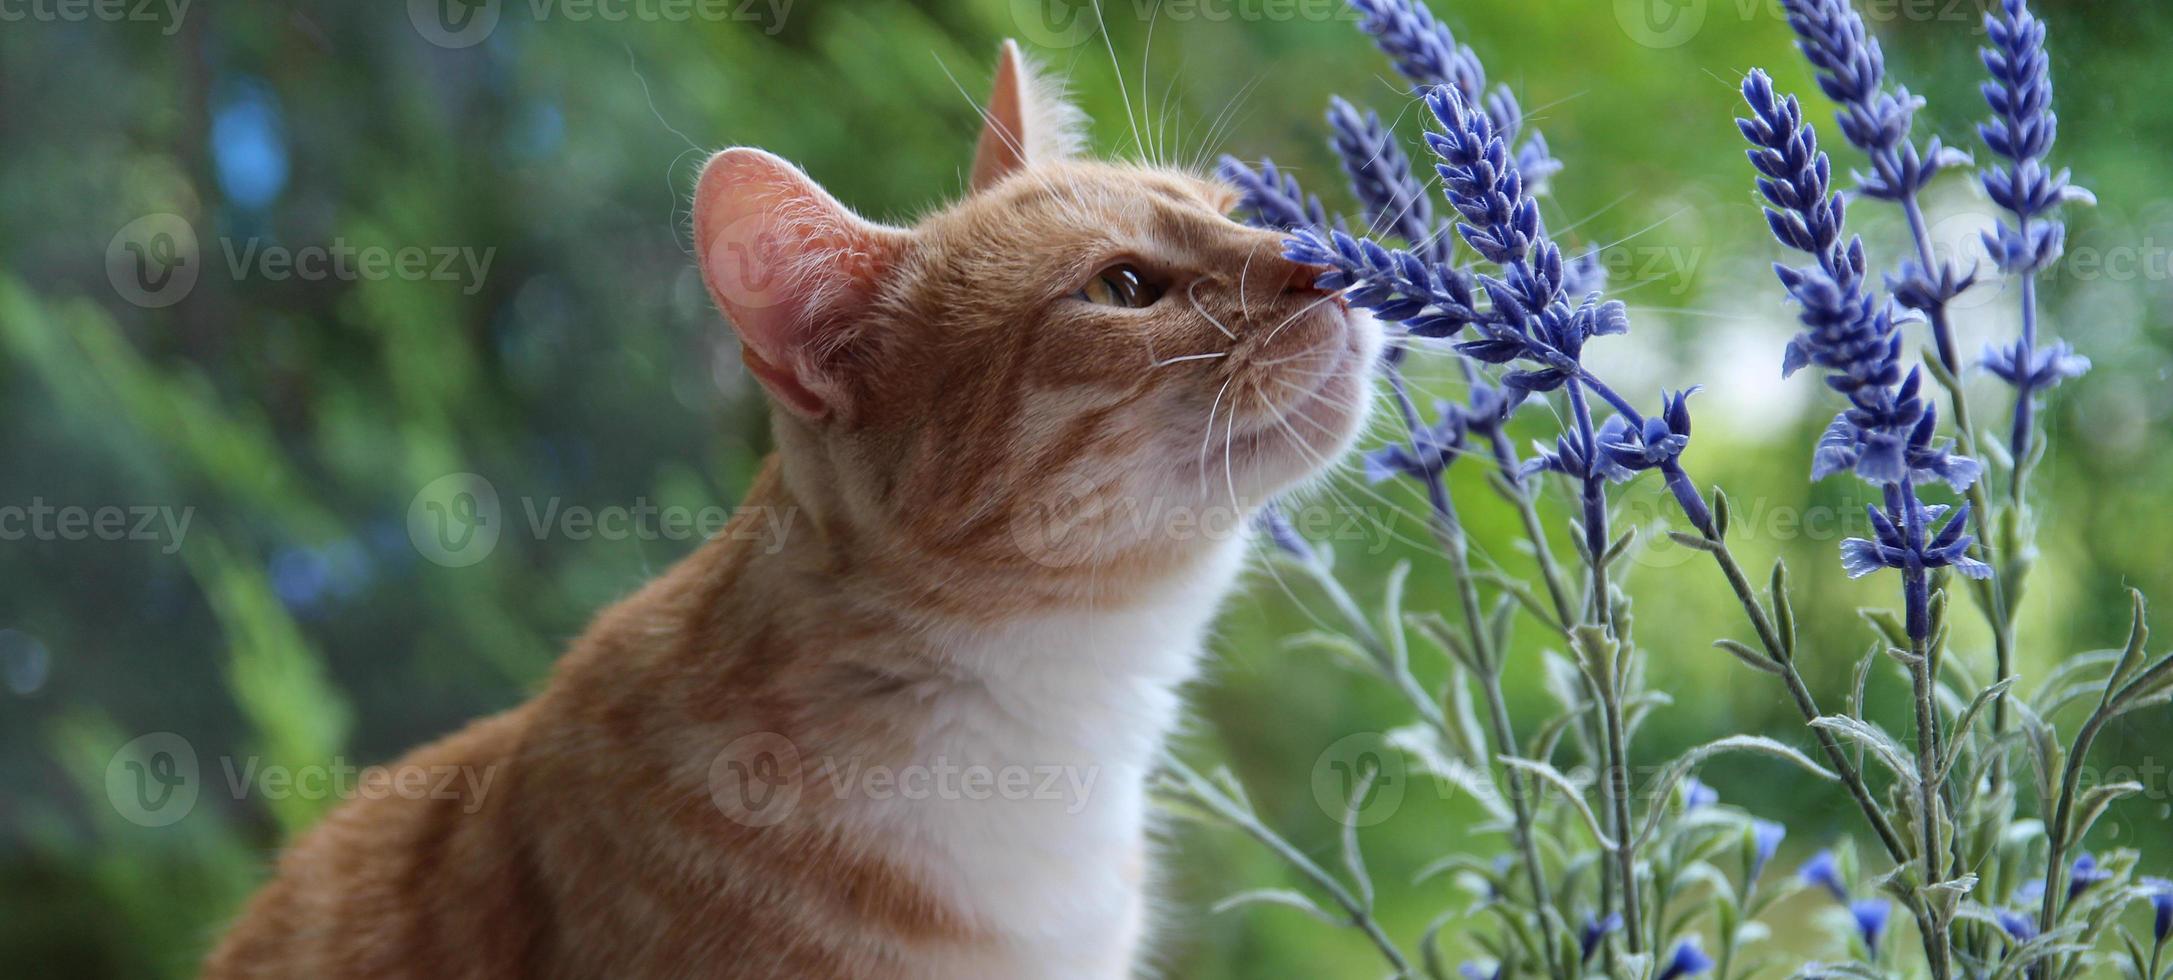 katt och lavendel- blomma bakgrund foto